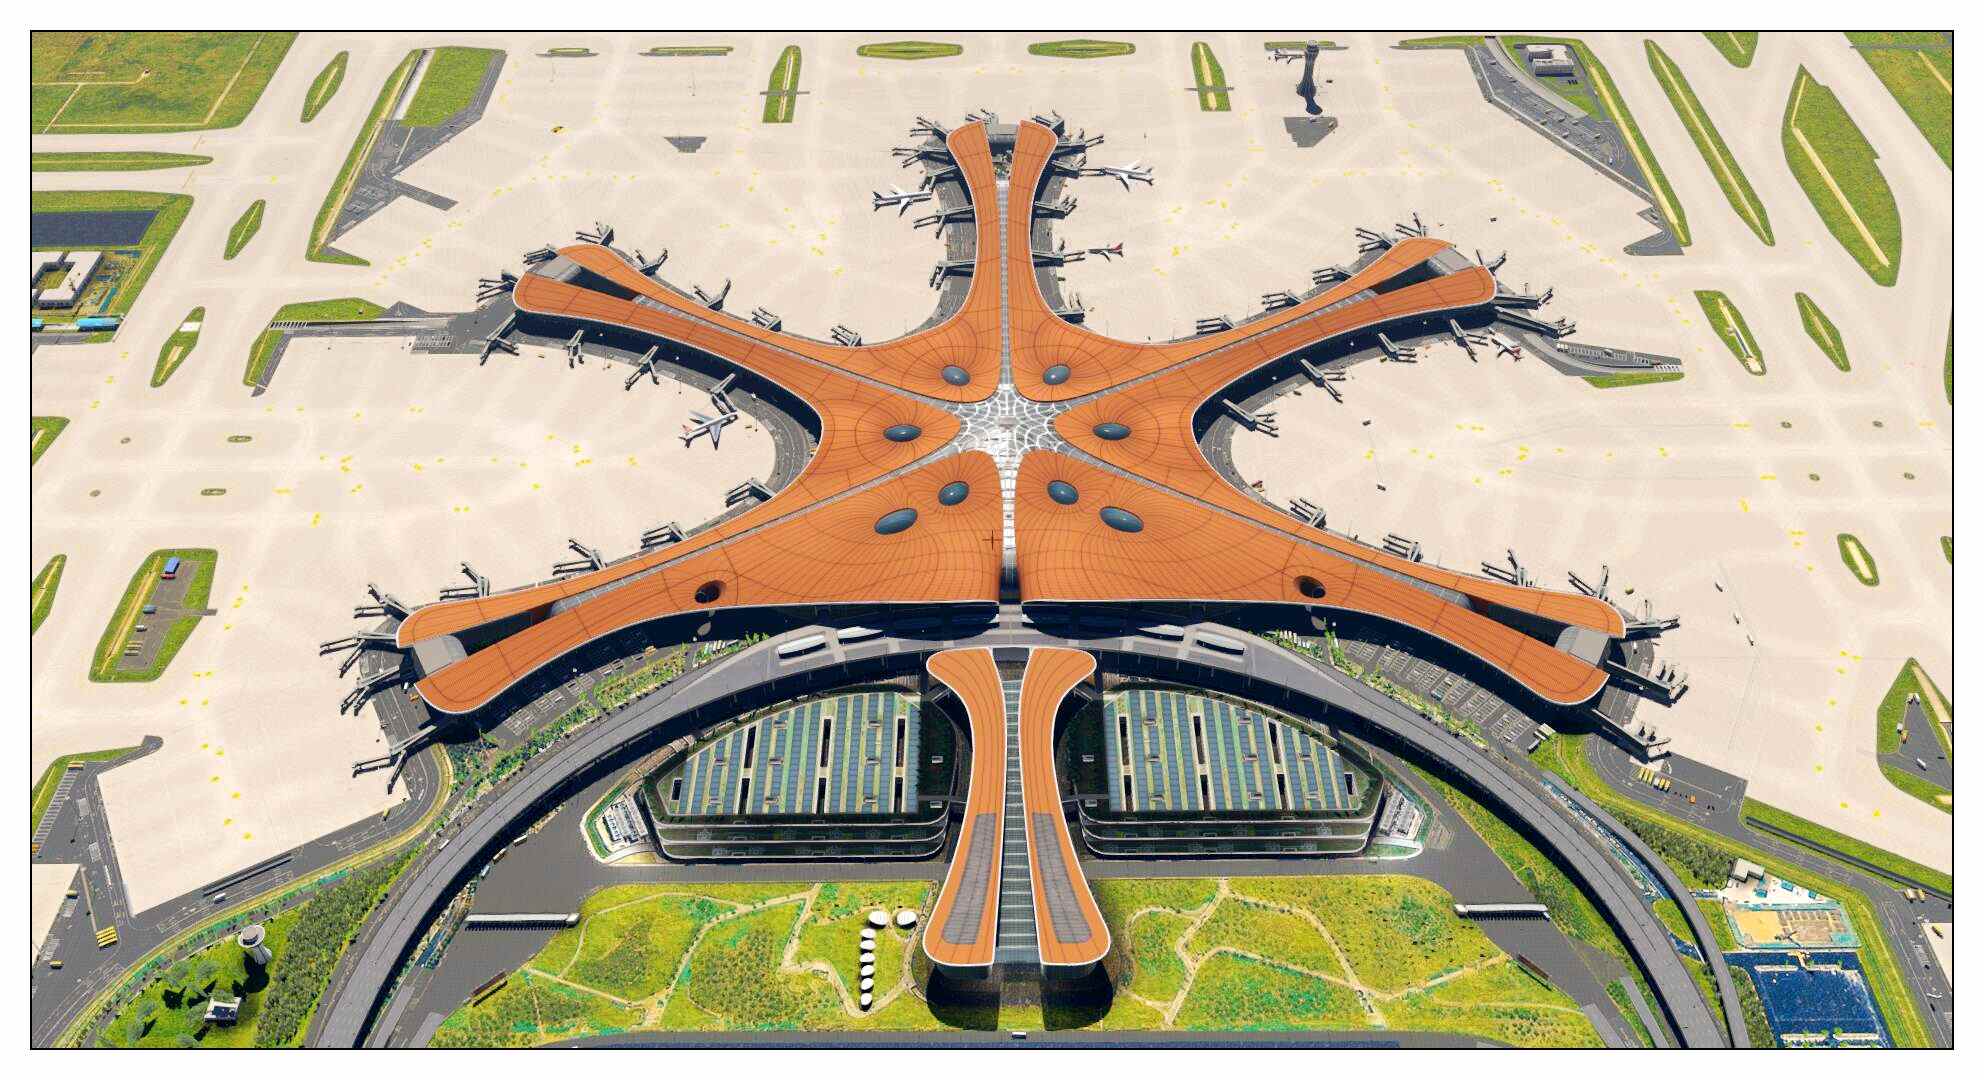 【X-Plane】ZBAD北京大兴国际机场-正式发布-2921 